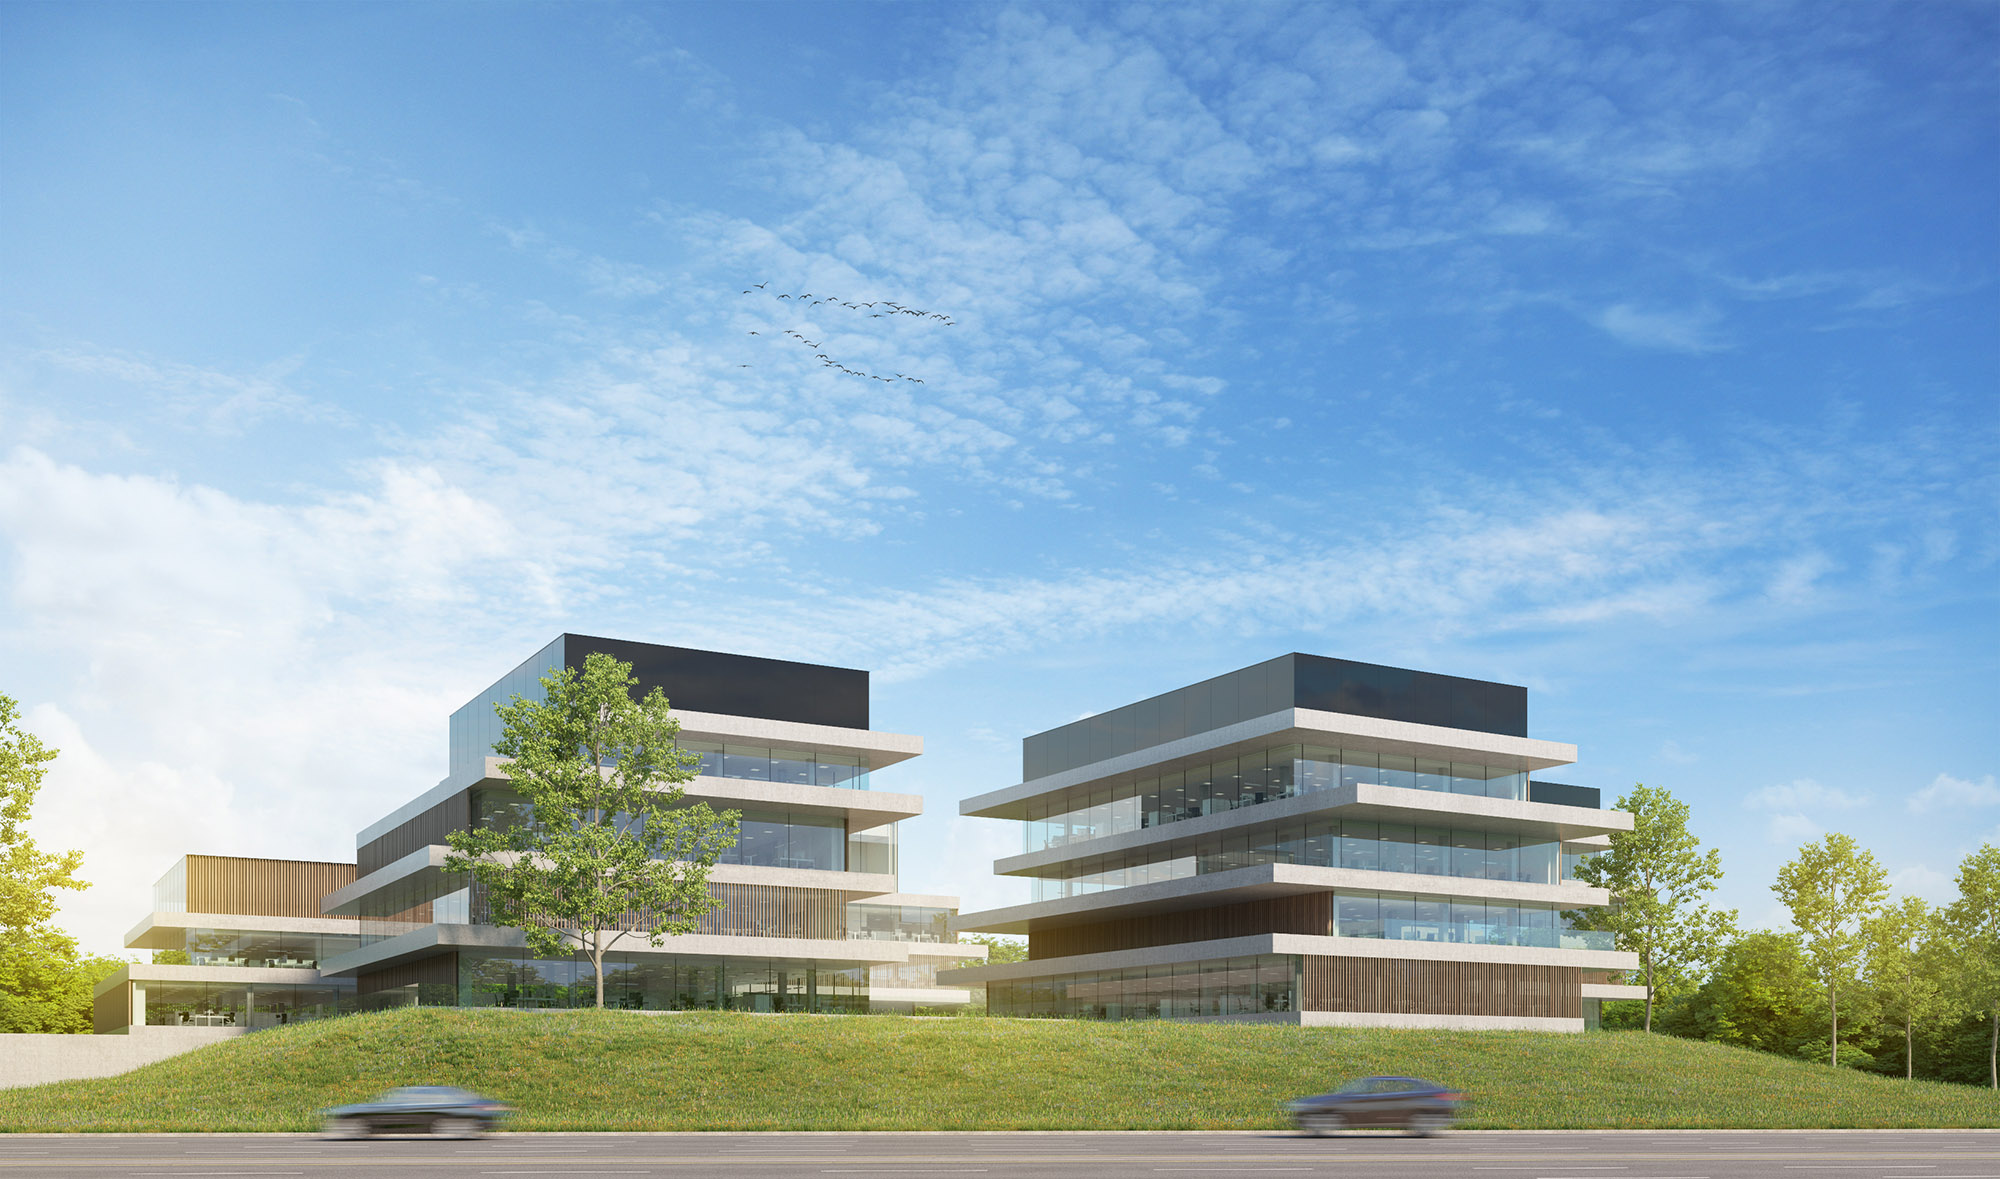 Bedrijfssite O-Forty wordt één van de grootste en meest innovatieve campussen van Vlaanderen